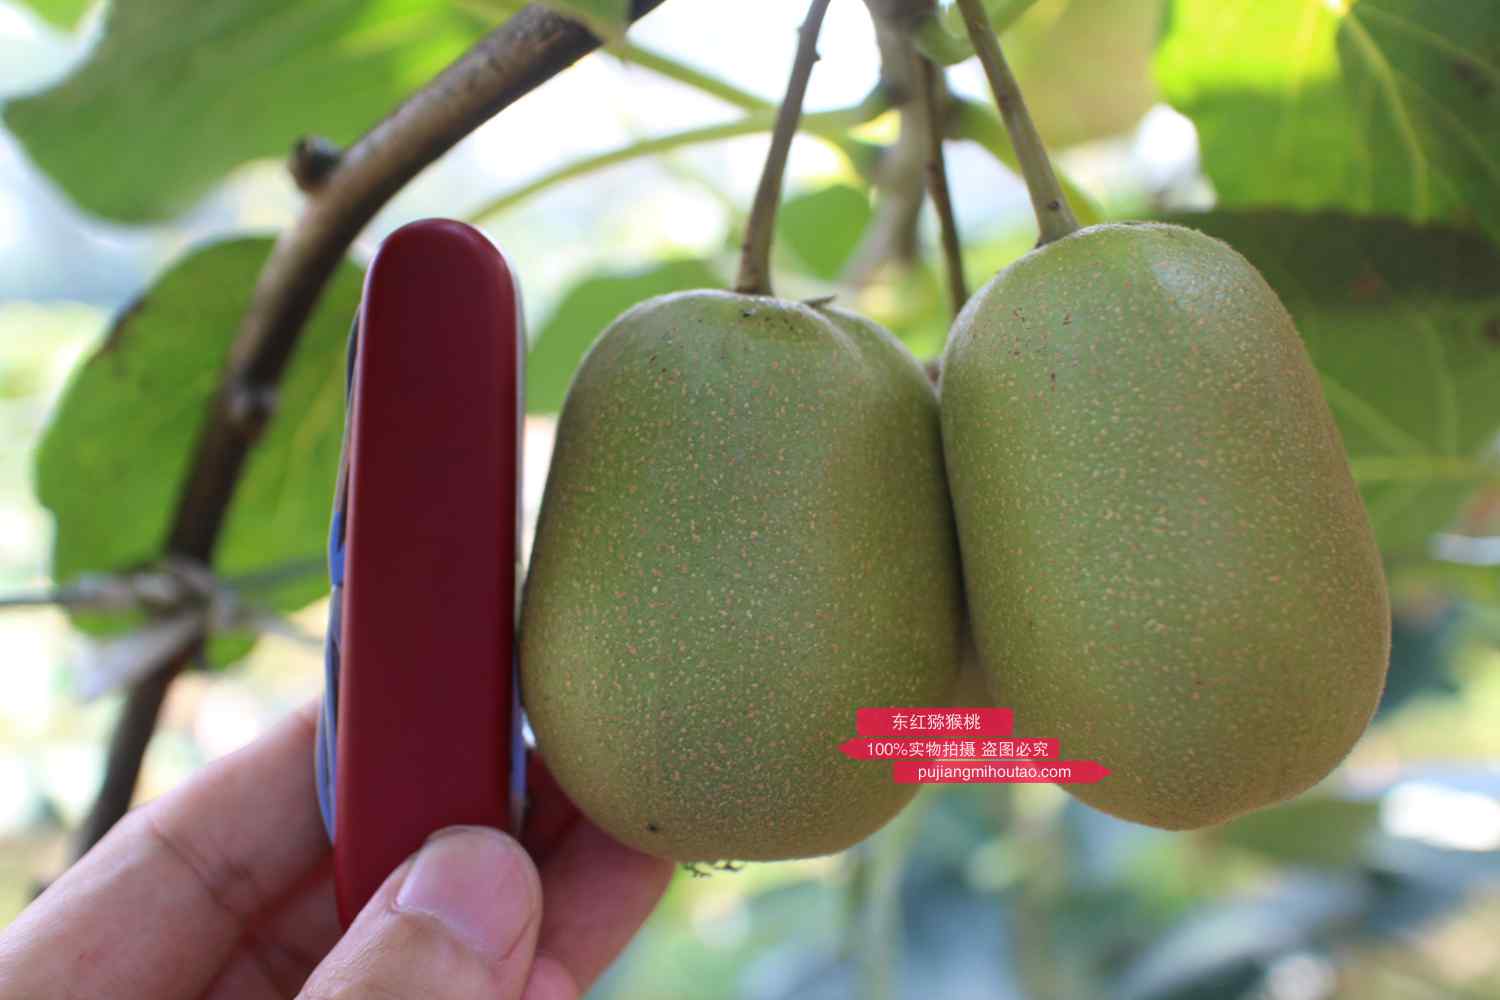 四川誉原鲜猕猴桃品牌创始人四川蒲江东红猕猴桃苗木繁育种植